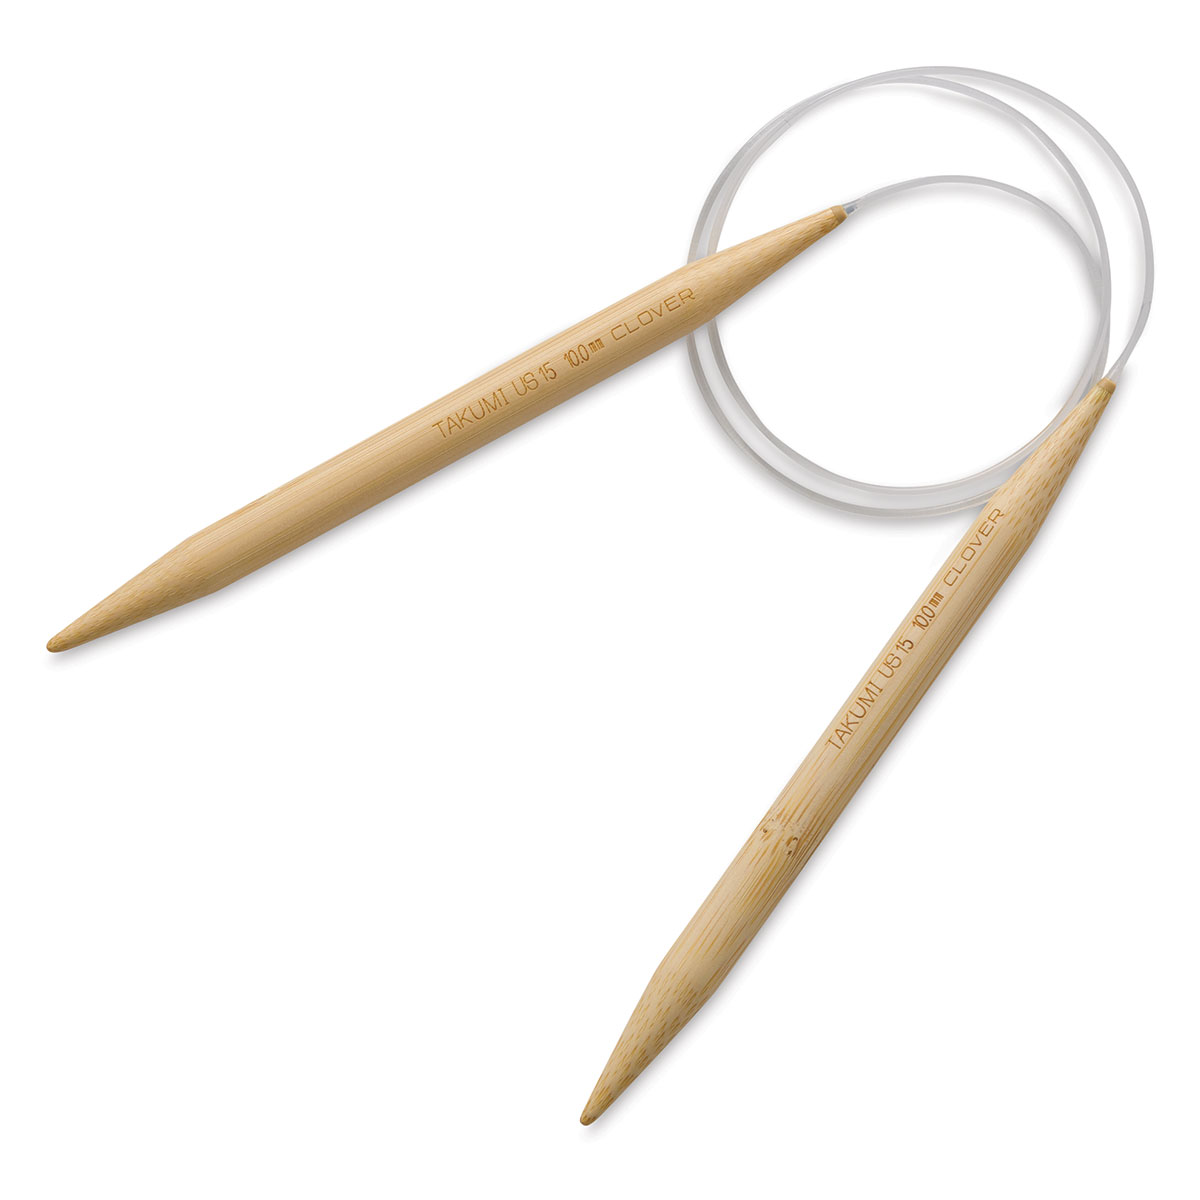 Clover Takumi Bamboo Circular Knitting Needles - Size 6, 16 Length